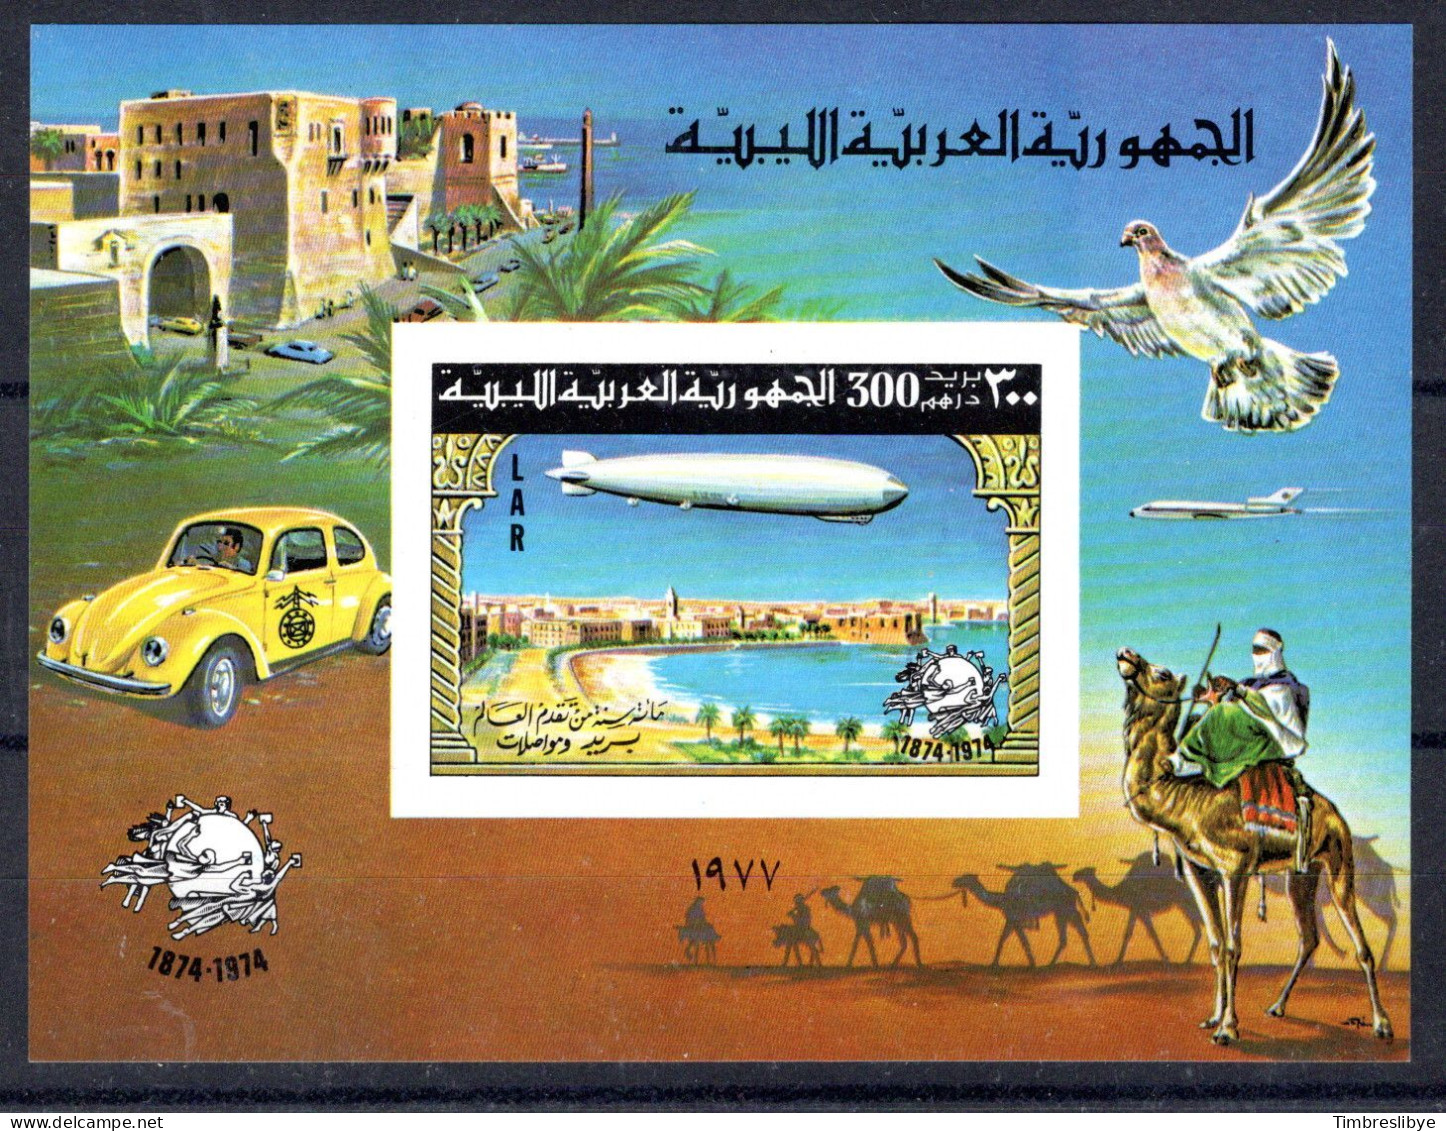 LIBYA ; 17.5.1977; 100e Anniversaire De L'UPU, Michel-N° 587 -Bloc No.25 B; Neuf ** - Libya